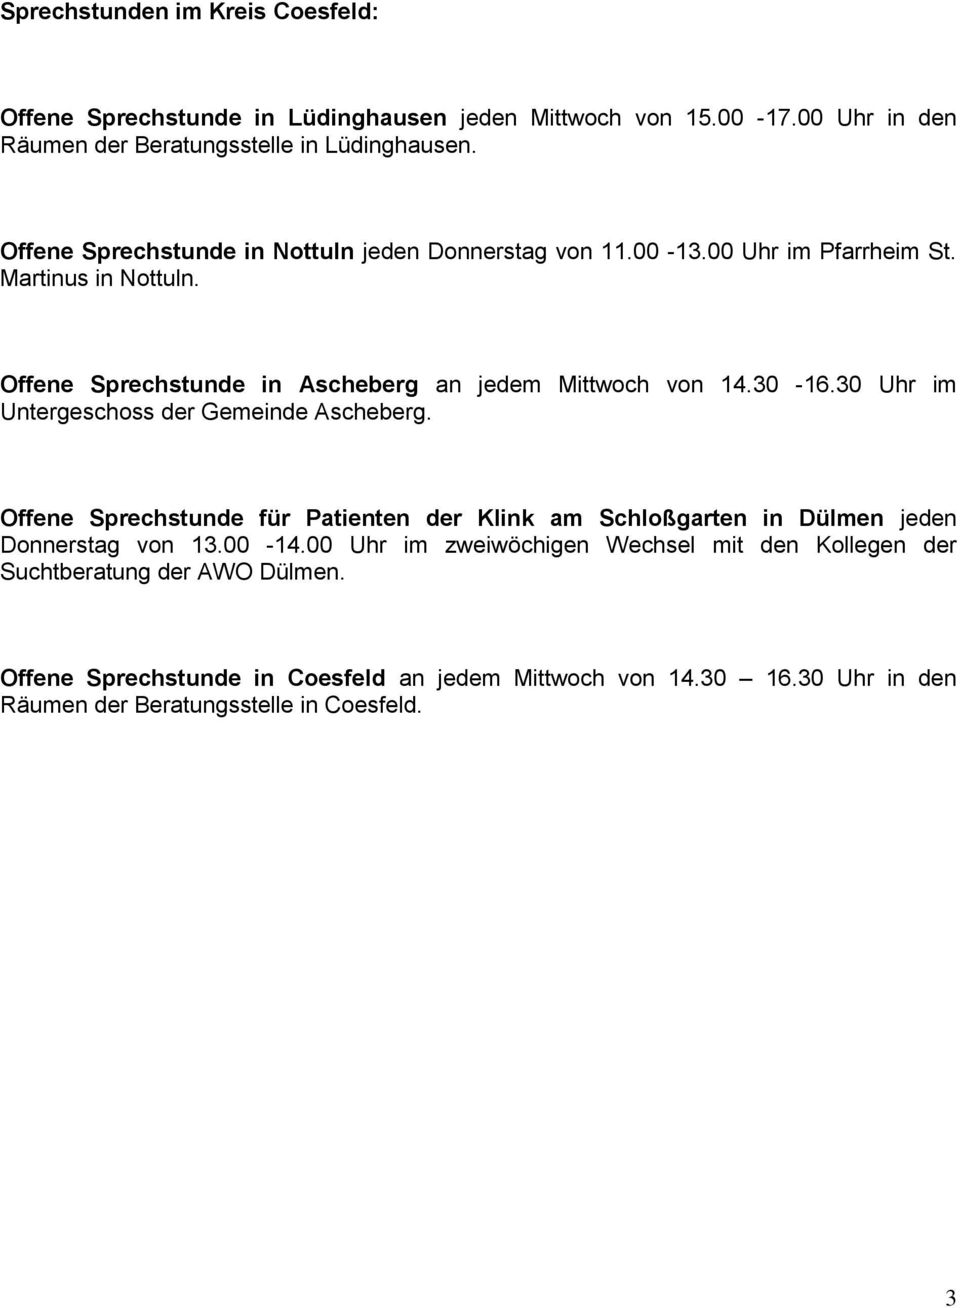 30-16.30 Uhr im Untergeschoss der Gemeinde Ascheberg. Offene Sprechstunde für Patienten der Klink am Schloßgarten in Dülmen jeden Donnerstag von 13.00-14.